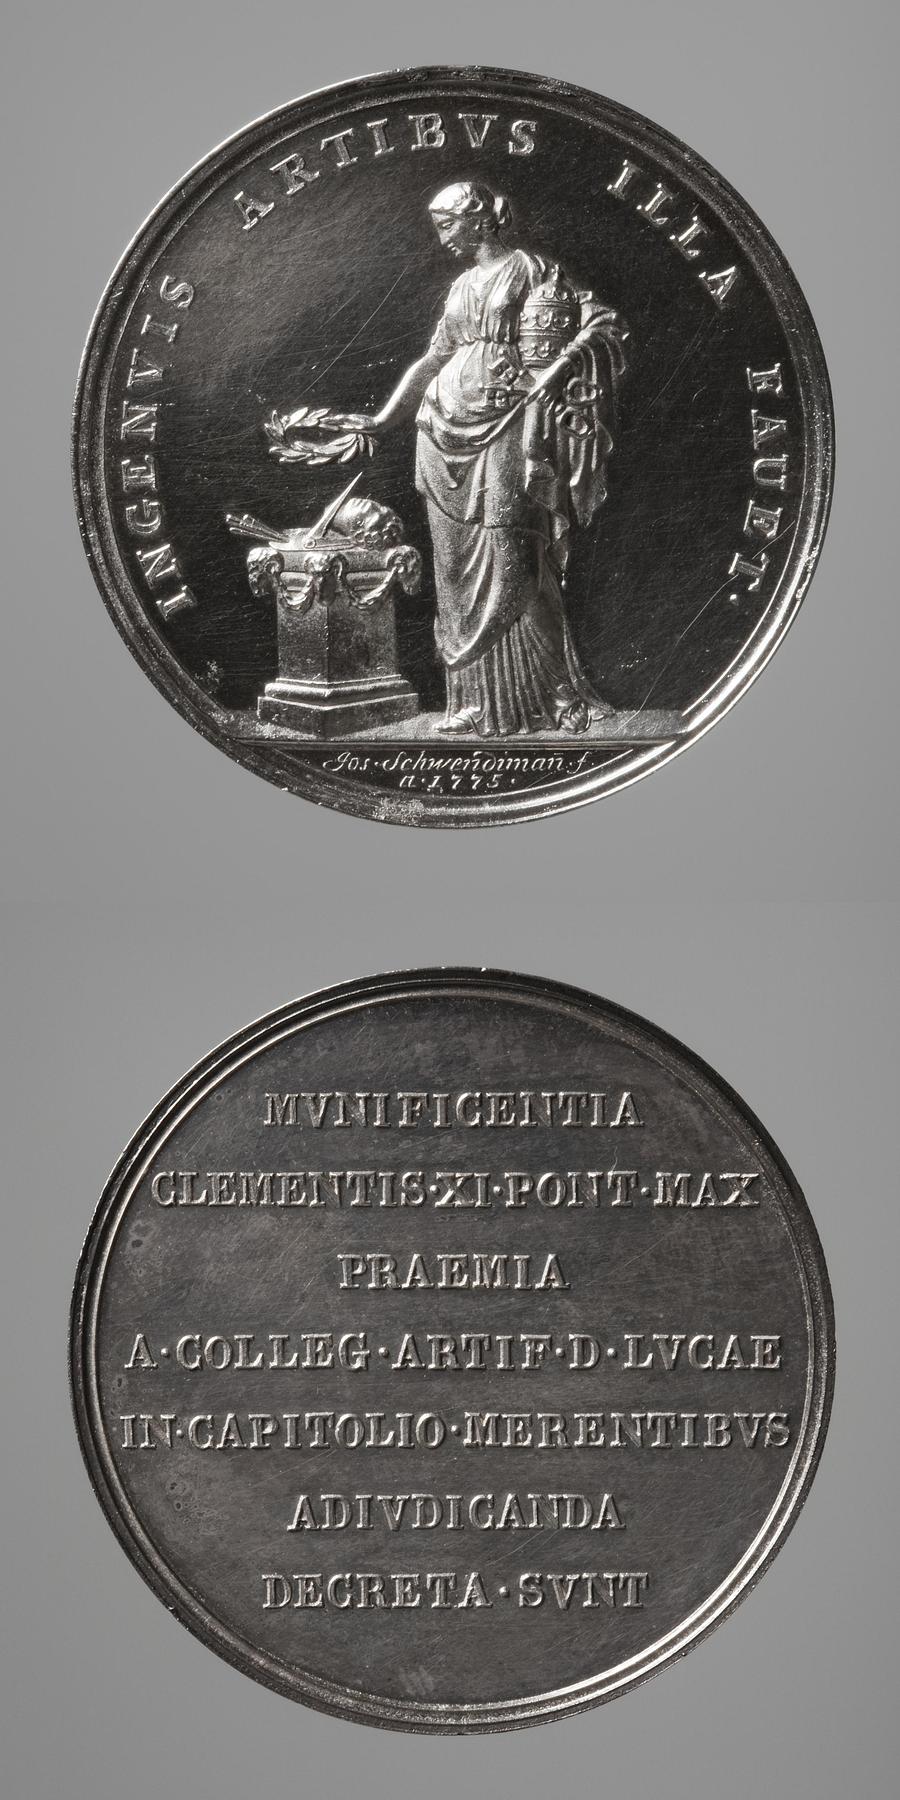 Medaljens forside: Pavemagten rækker en laurbærkrans over et alter med kunstarternes attributter. Medaljens bagside: Inskription, F30